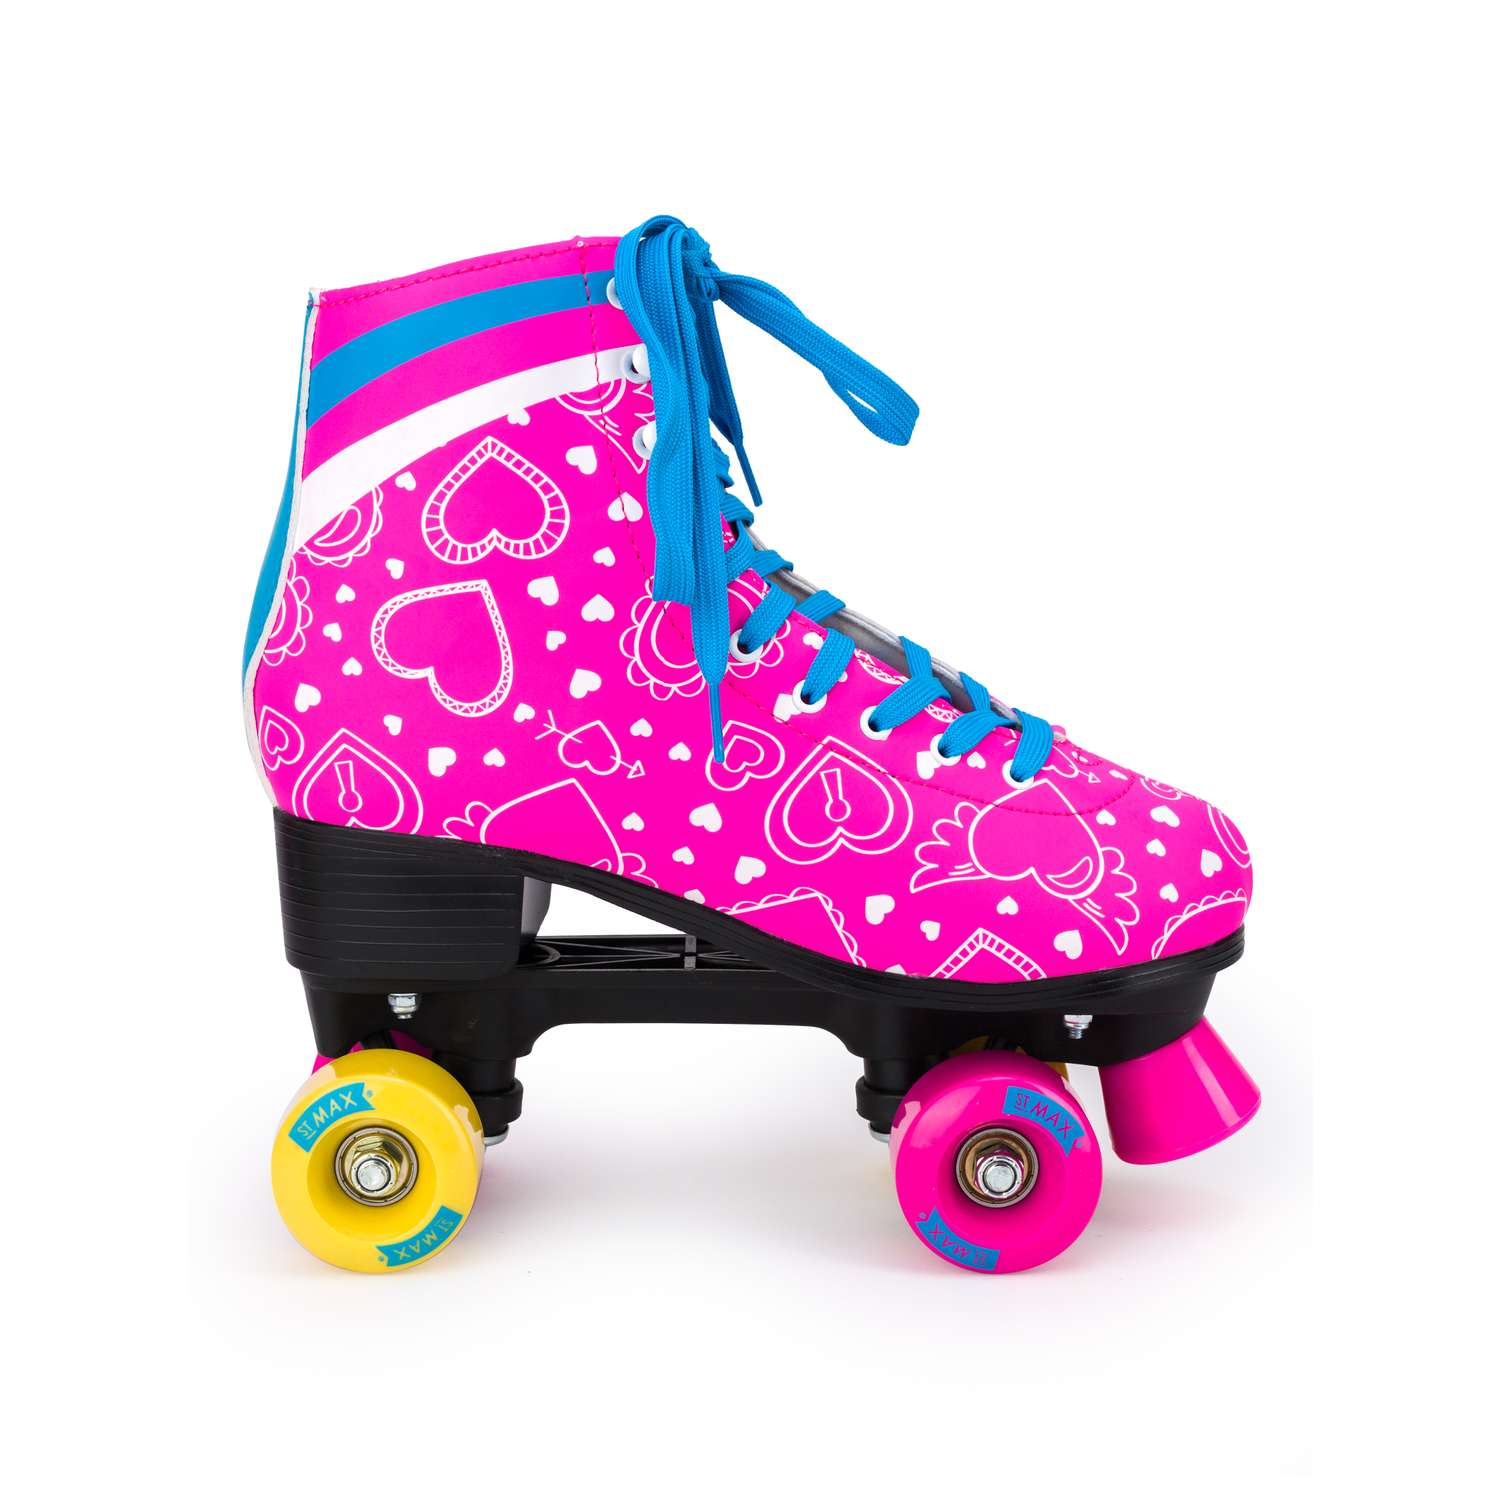 Роликовые коньки SXRide Roller skate YXSKT04BLPN38 цвет розовые с белыми сердечкам размер 38 - фото 2